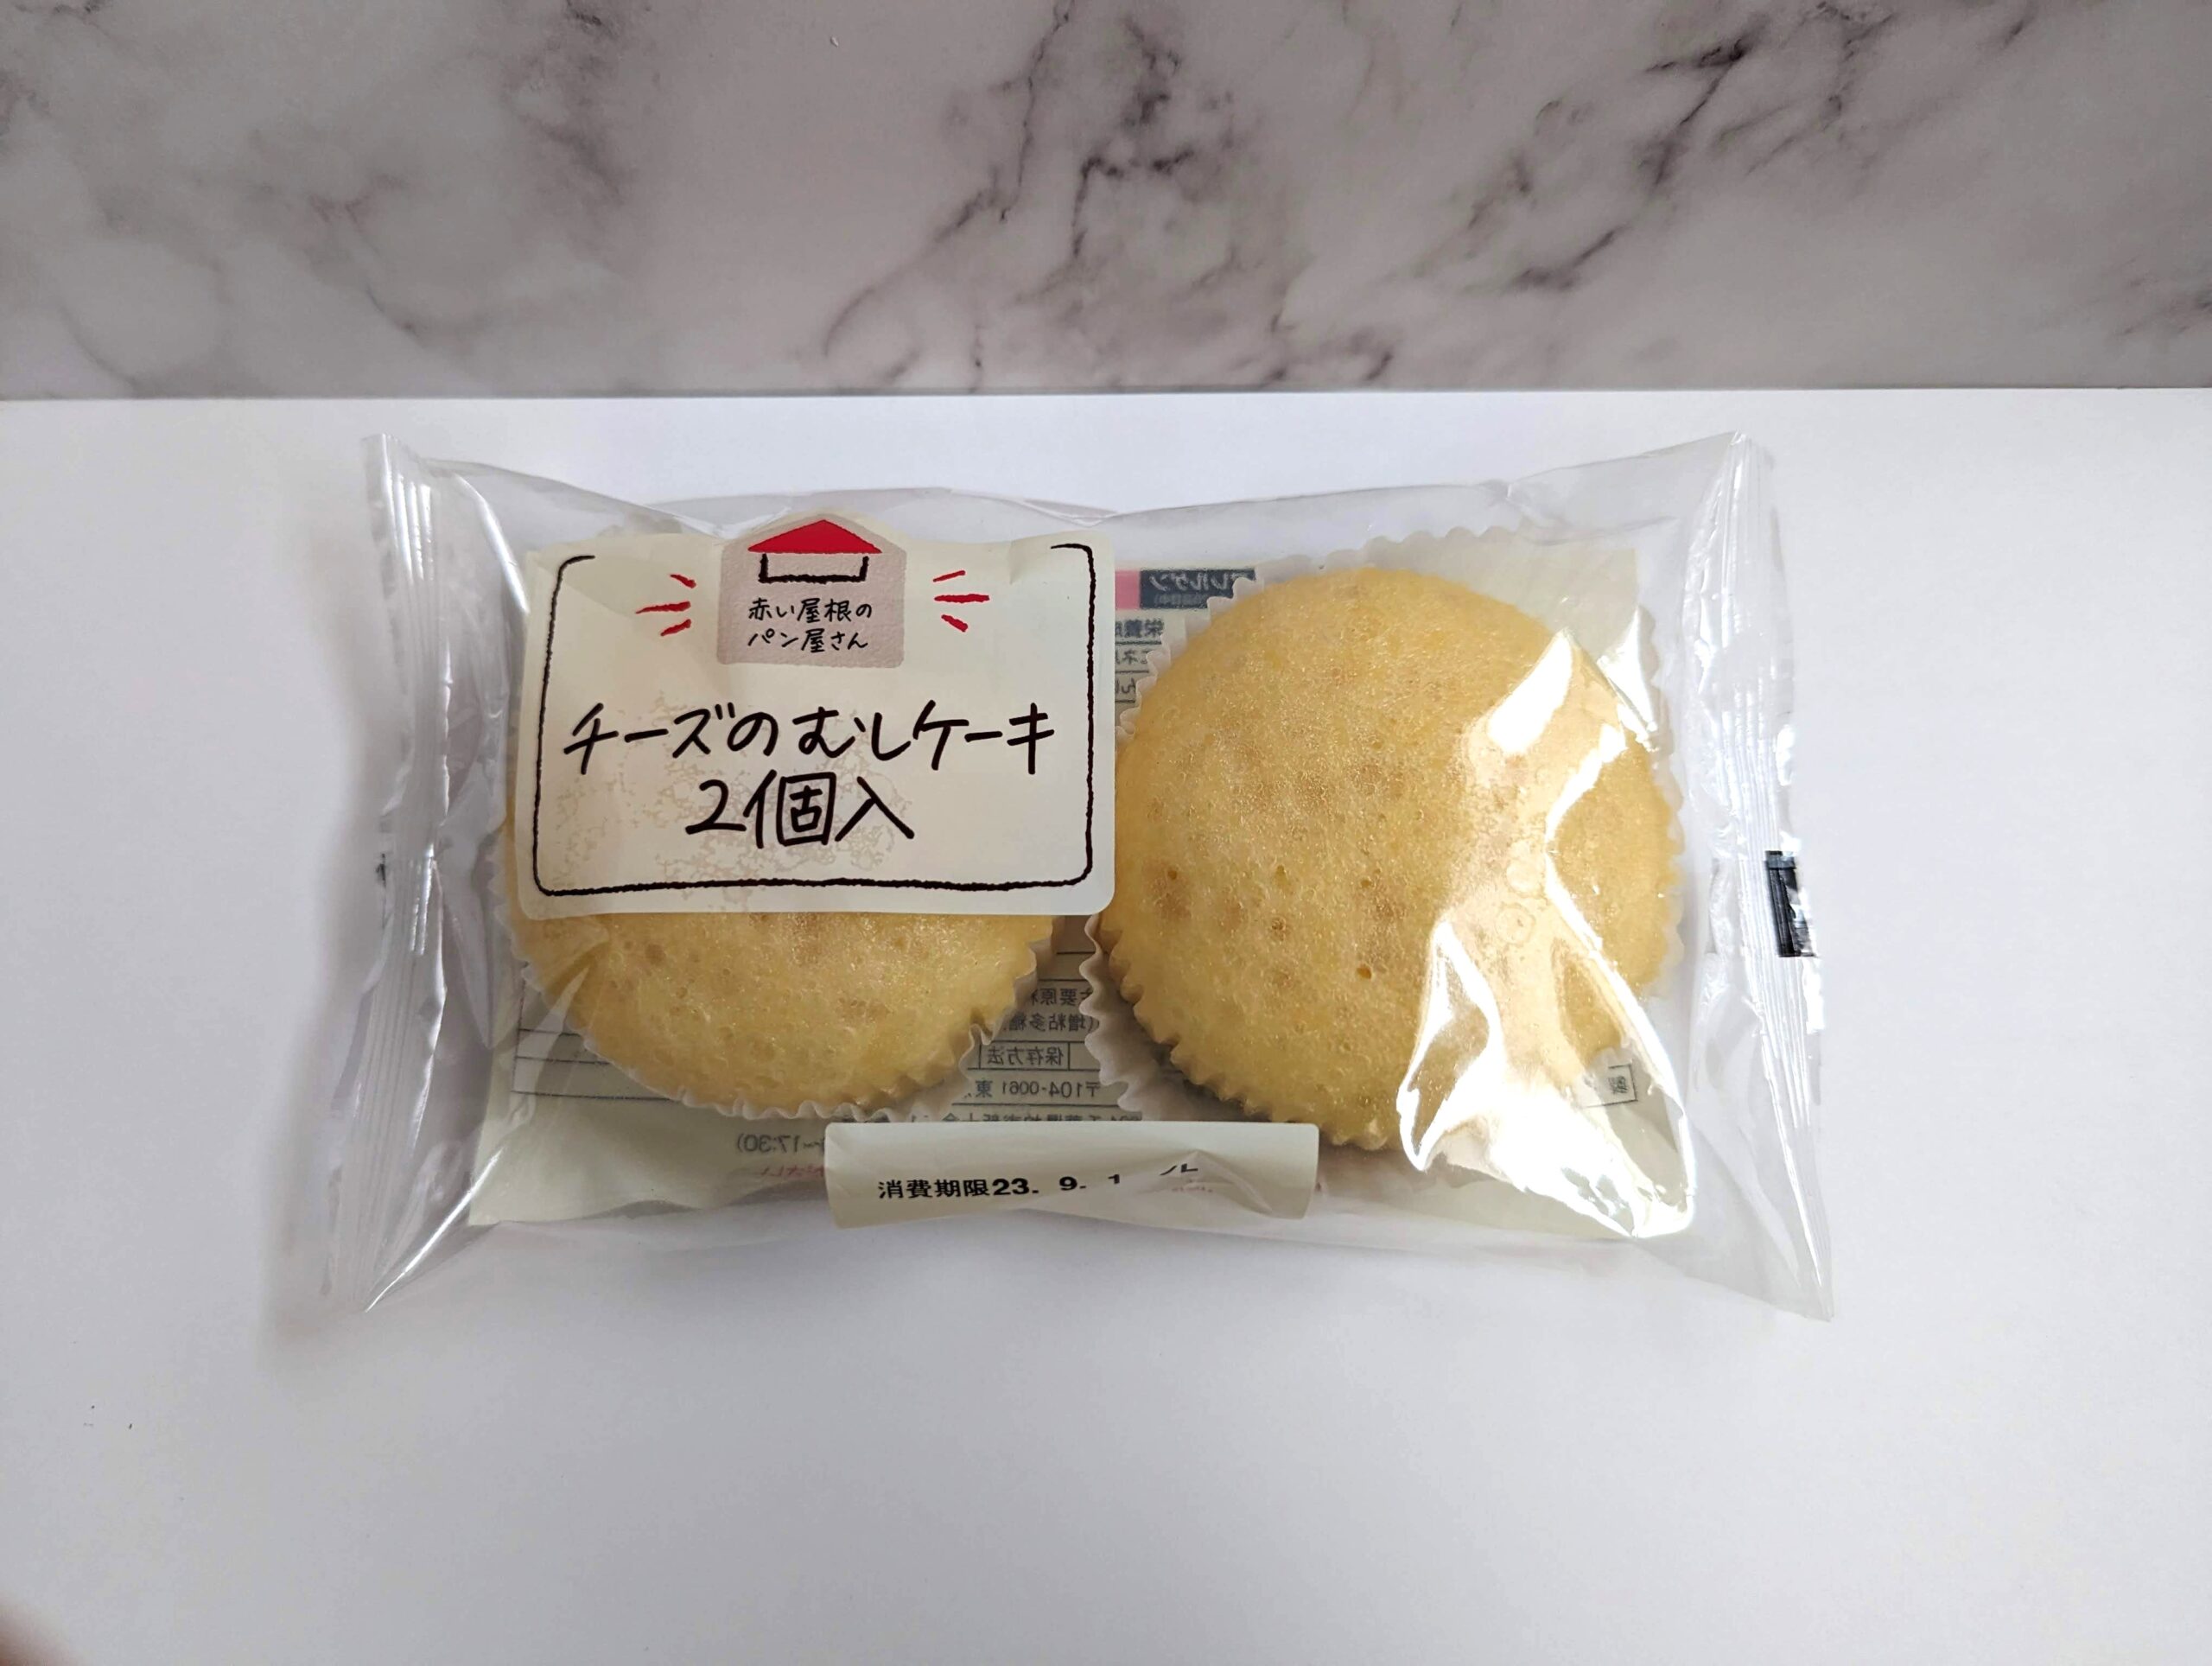 木村屋の「チーズの蒸しケーキ」の写真 (1)